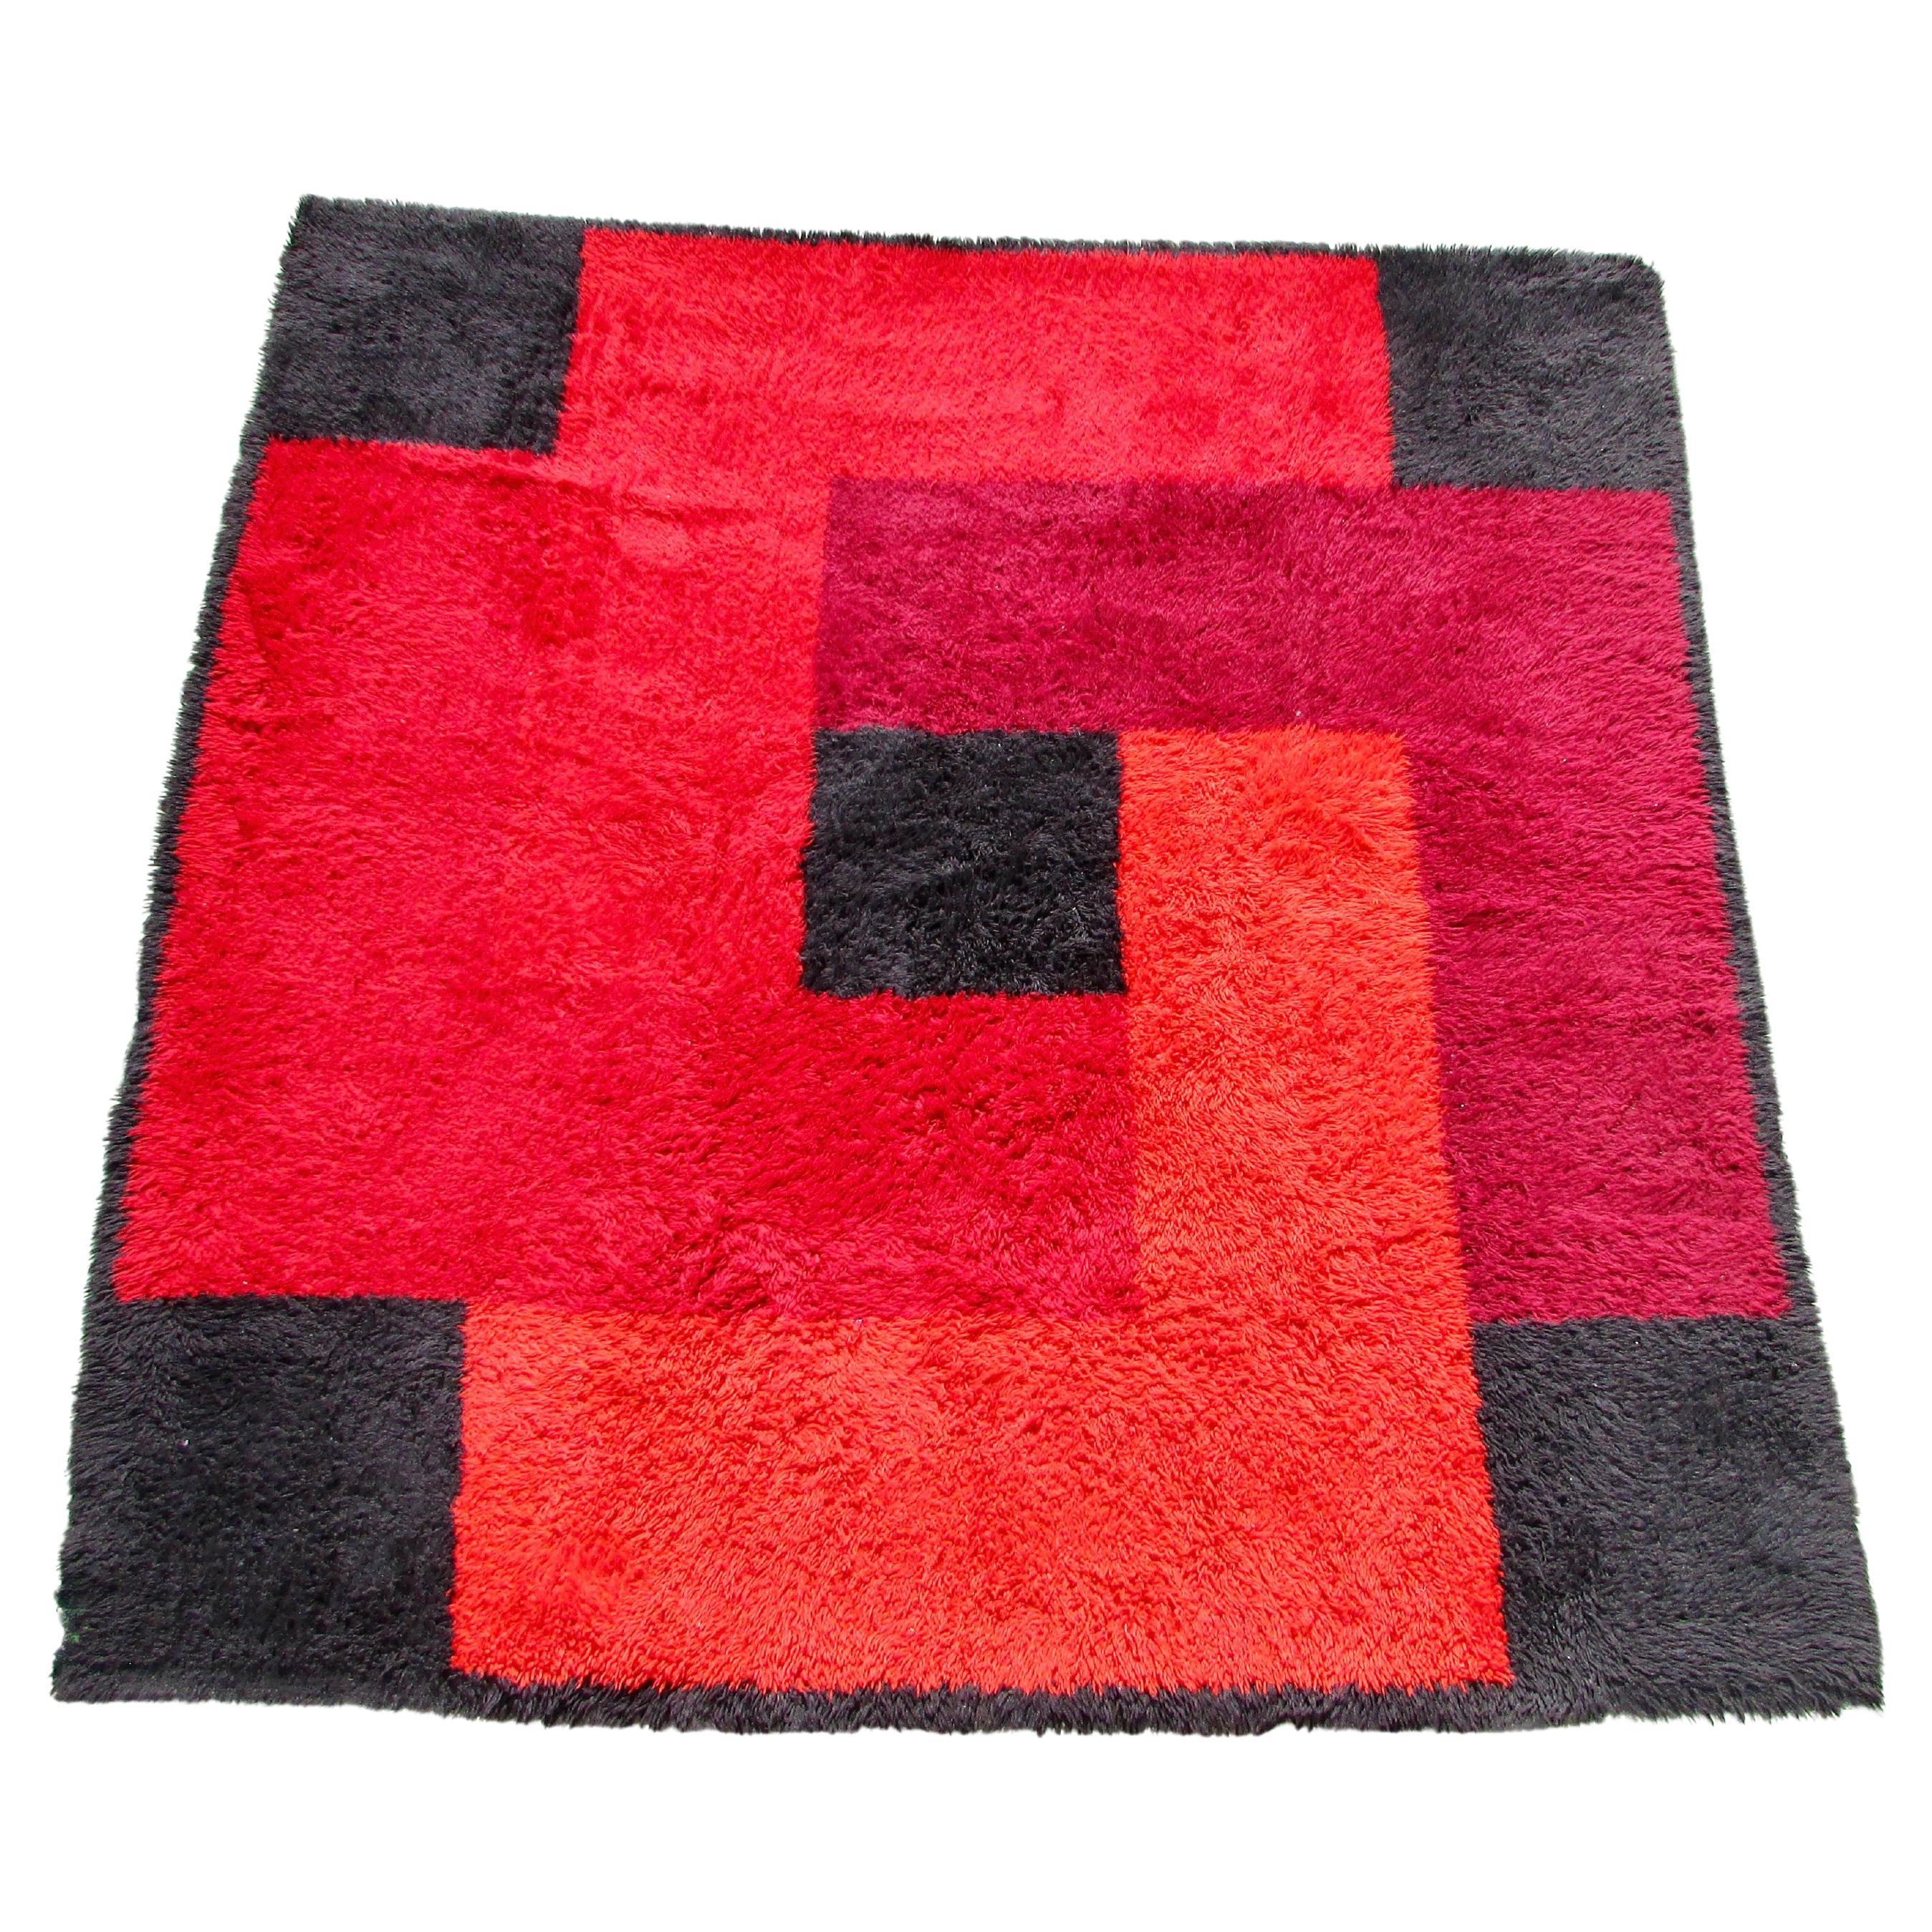 Schwedischer Rya-Teppich mit geometrischem Muster in Rot, Orange und Schwarz